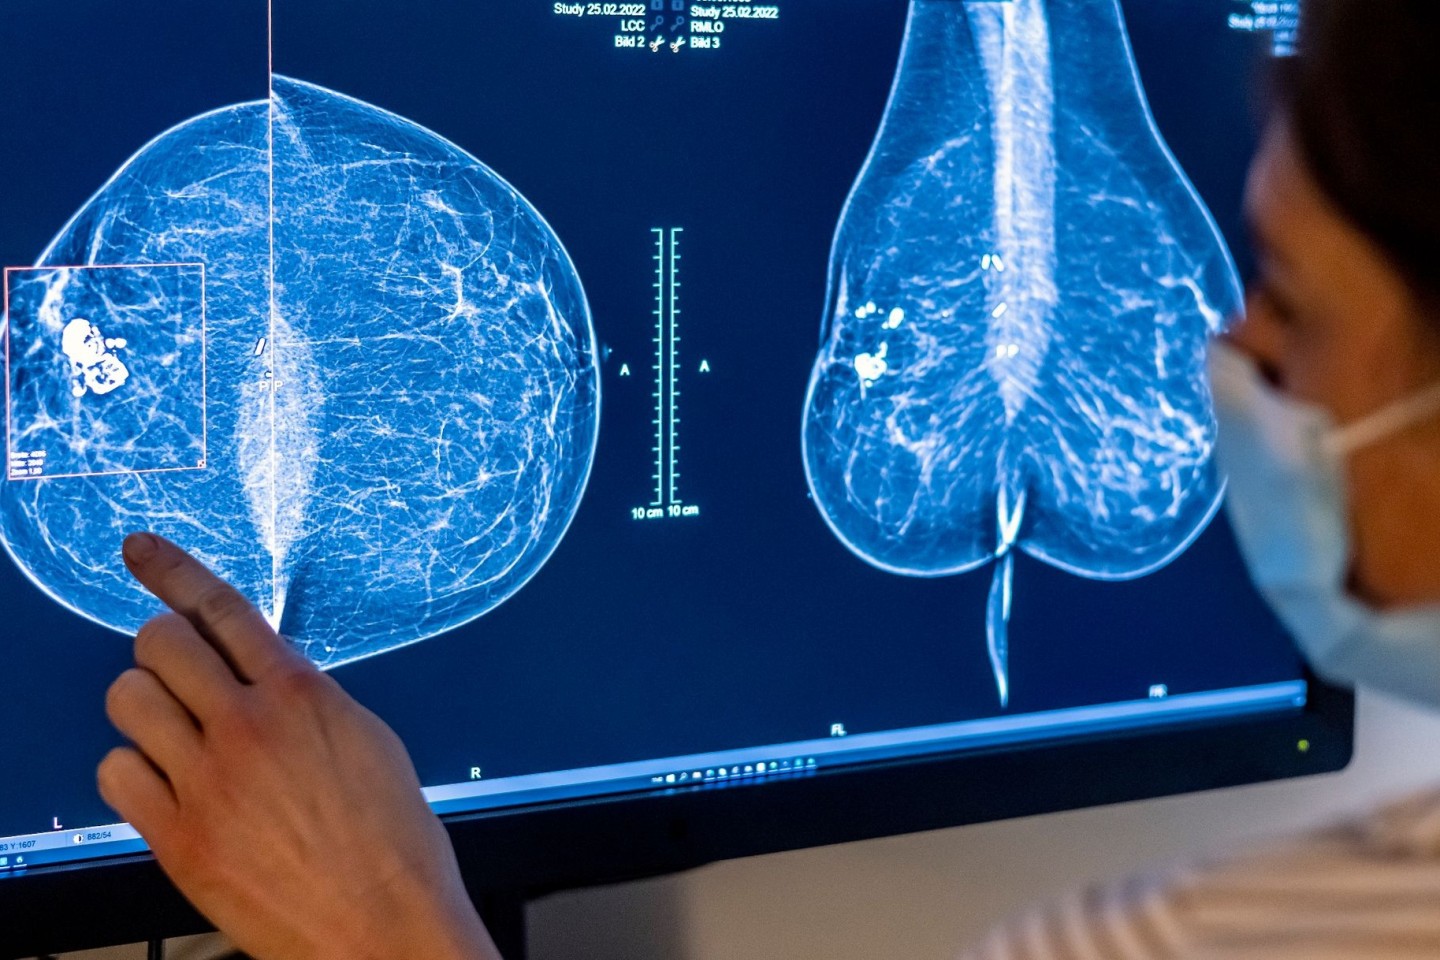 Brustkrebs ist die häufigste Krebserkrankung bei Frauen in Deutschland.